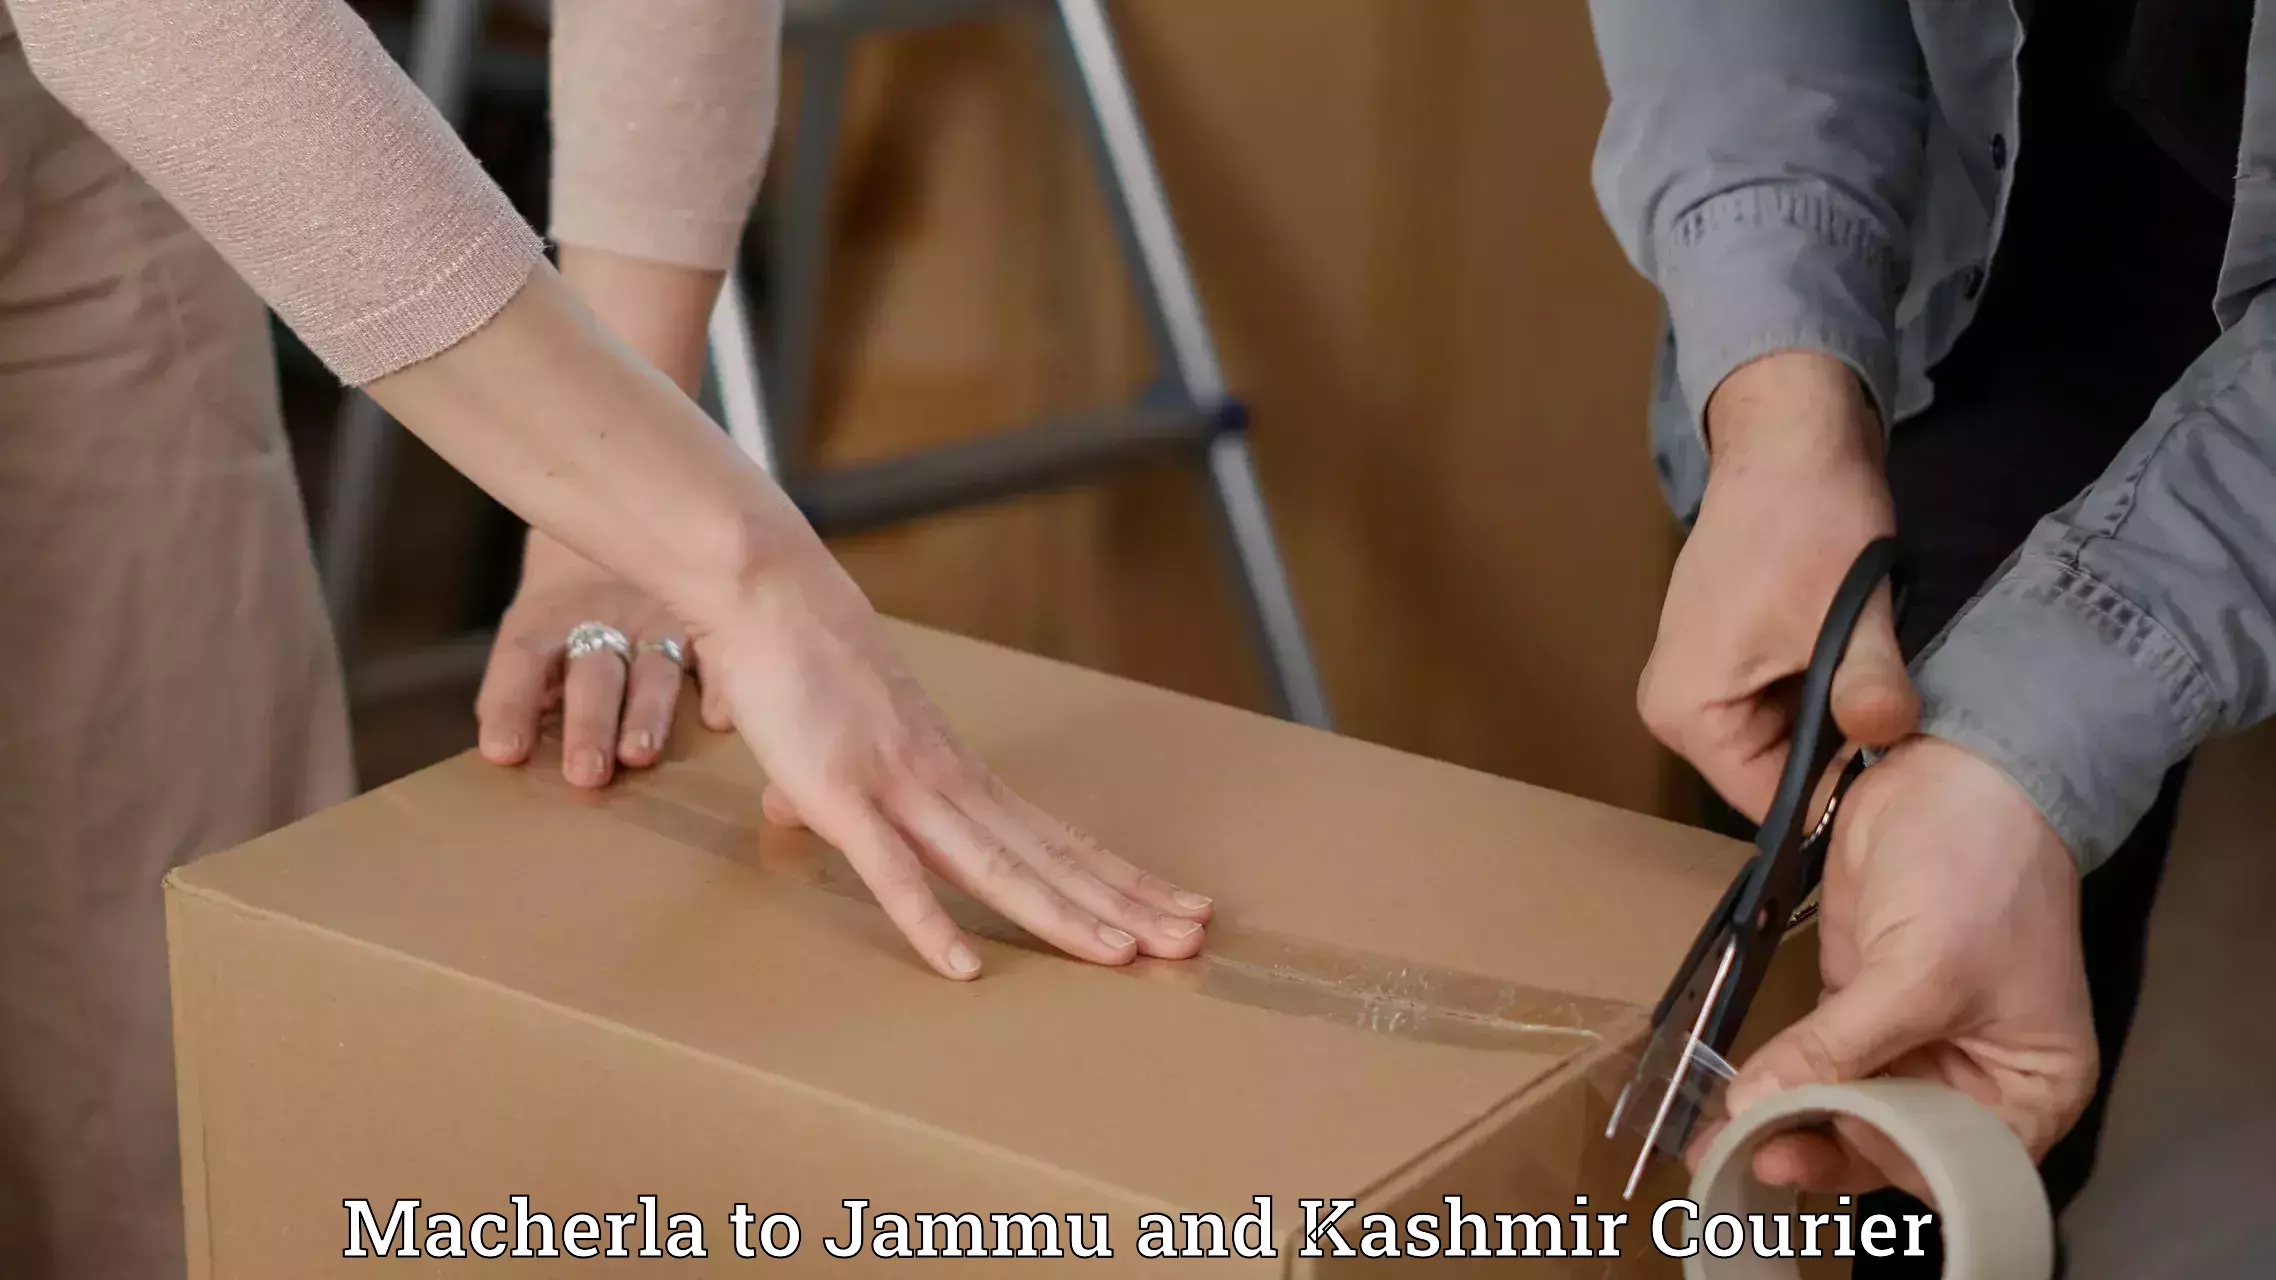 Global parcel delivery Macherla to Jammu and Kashmir